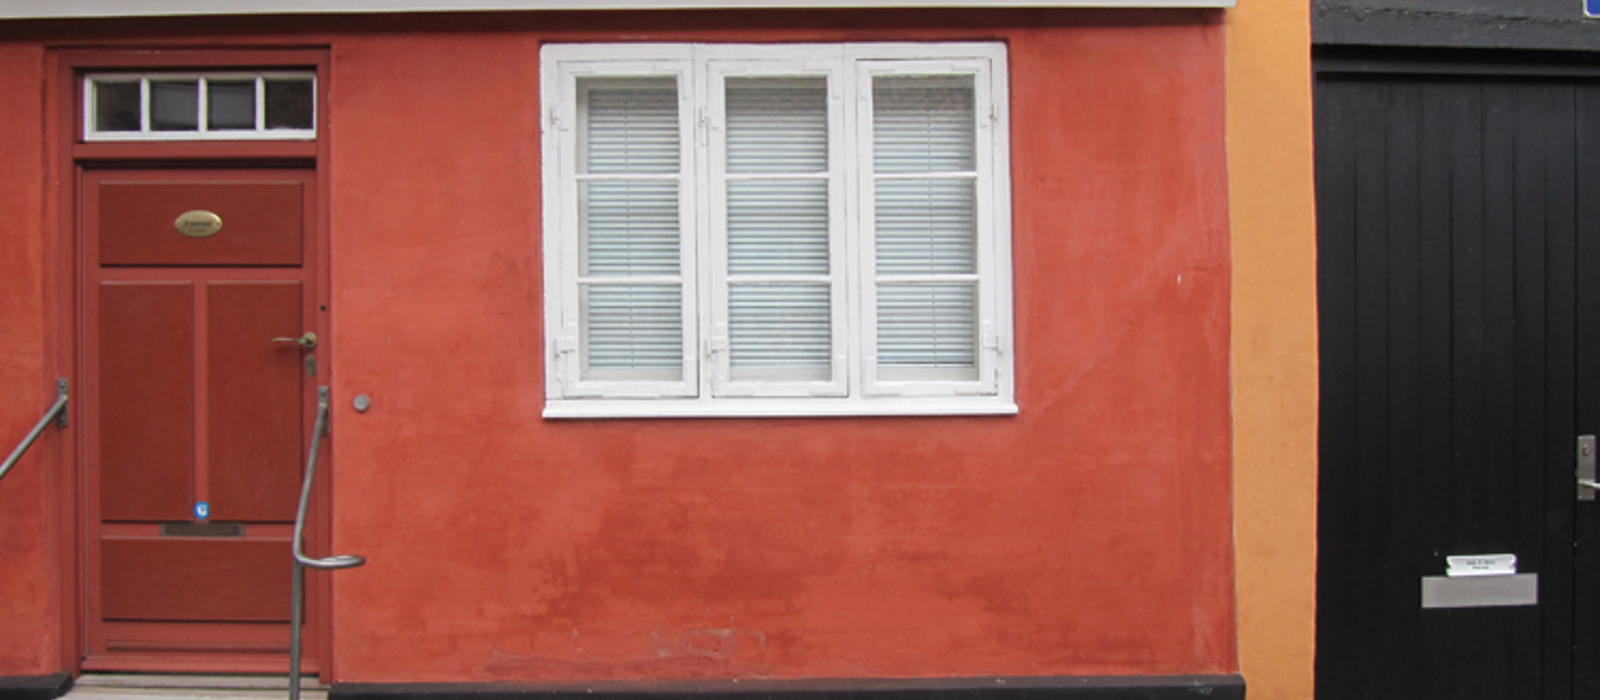 Det lille røde huset har kalket fasade. Foto:Weber-Norge